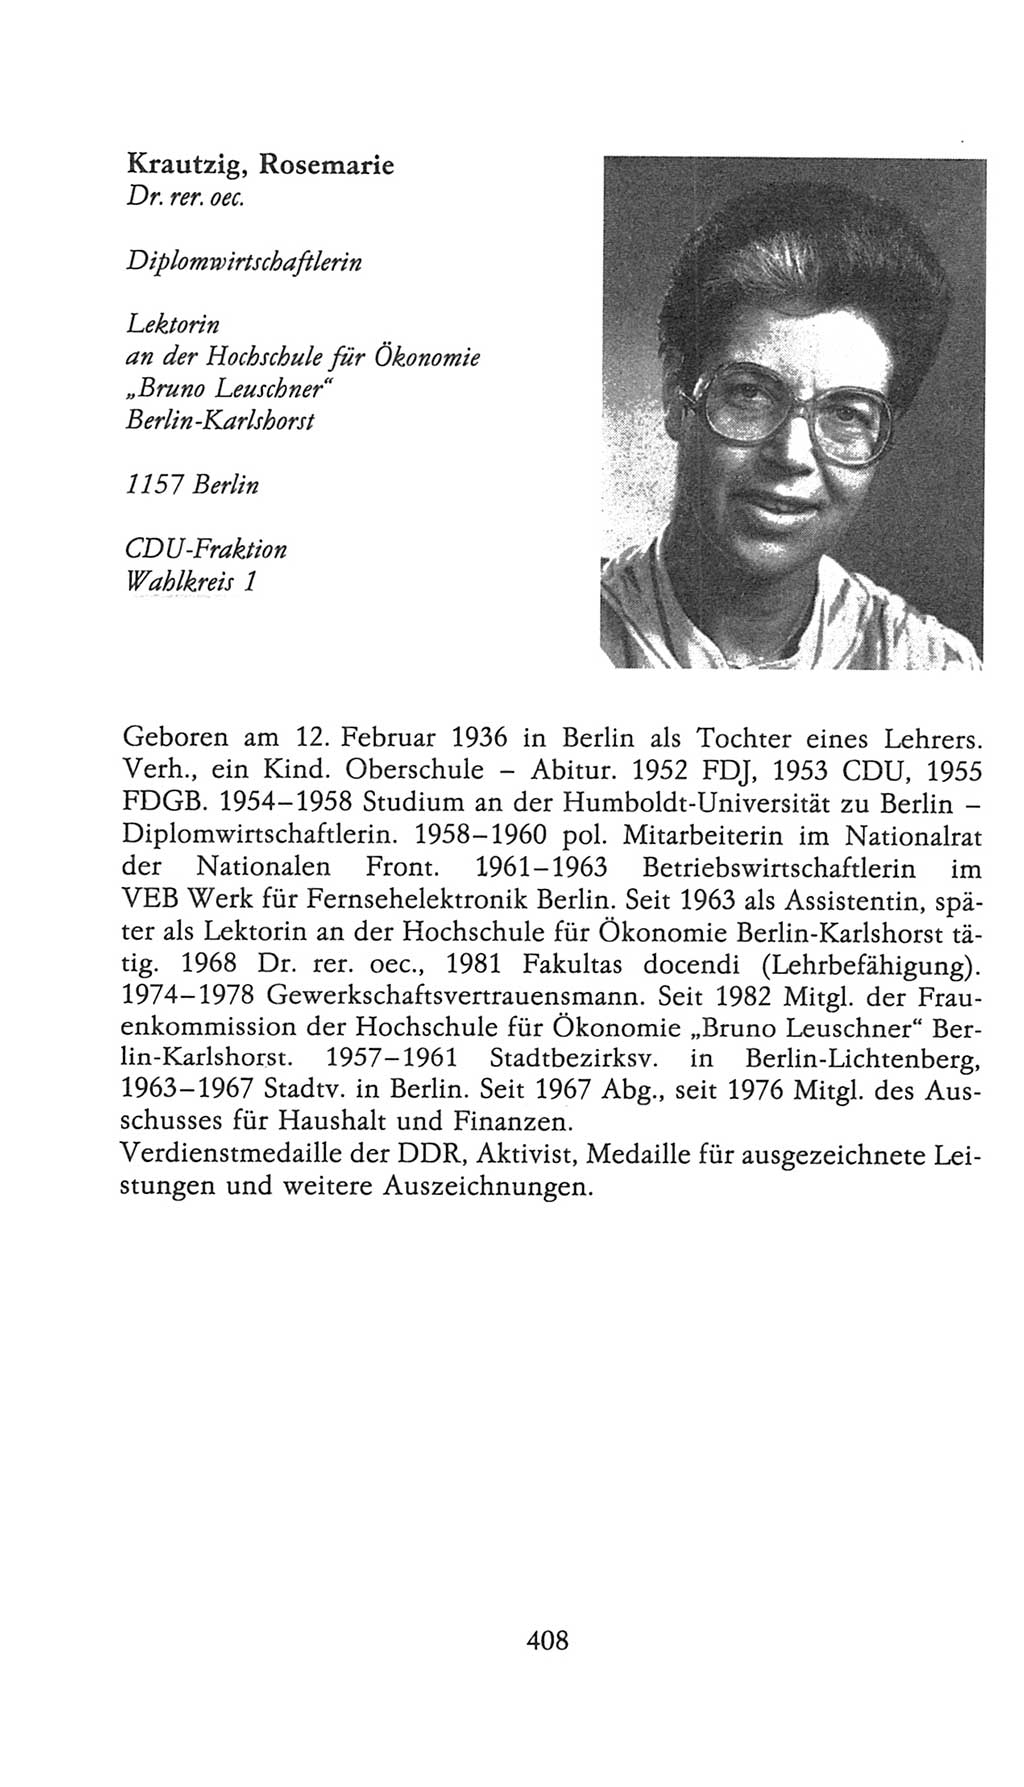 Volkskammer (VK) der Deutschen Demokratischen Republik (DDR), 9. Wahlperiode 1986-1990, Seite 408 (VK. DDR 9. WP. 1986-1990, S. 408)